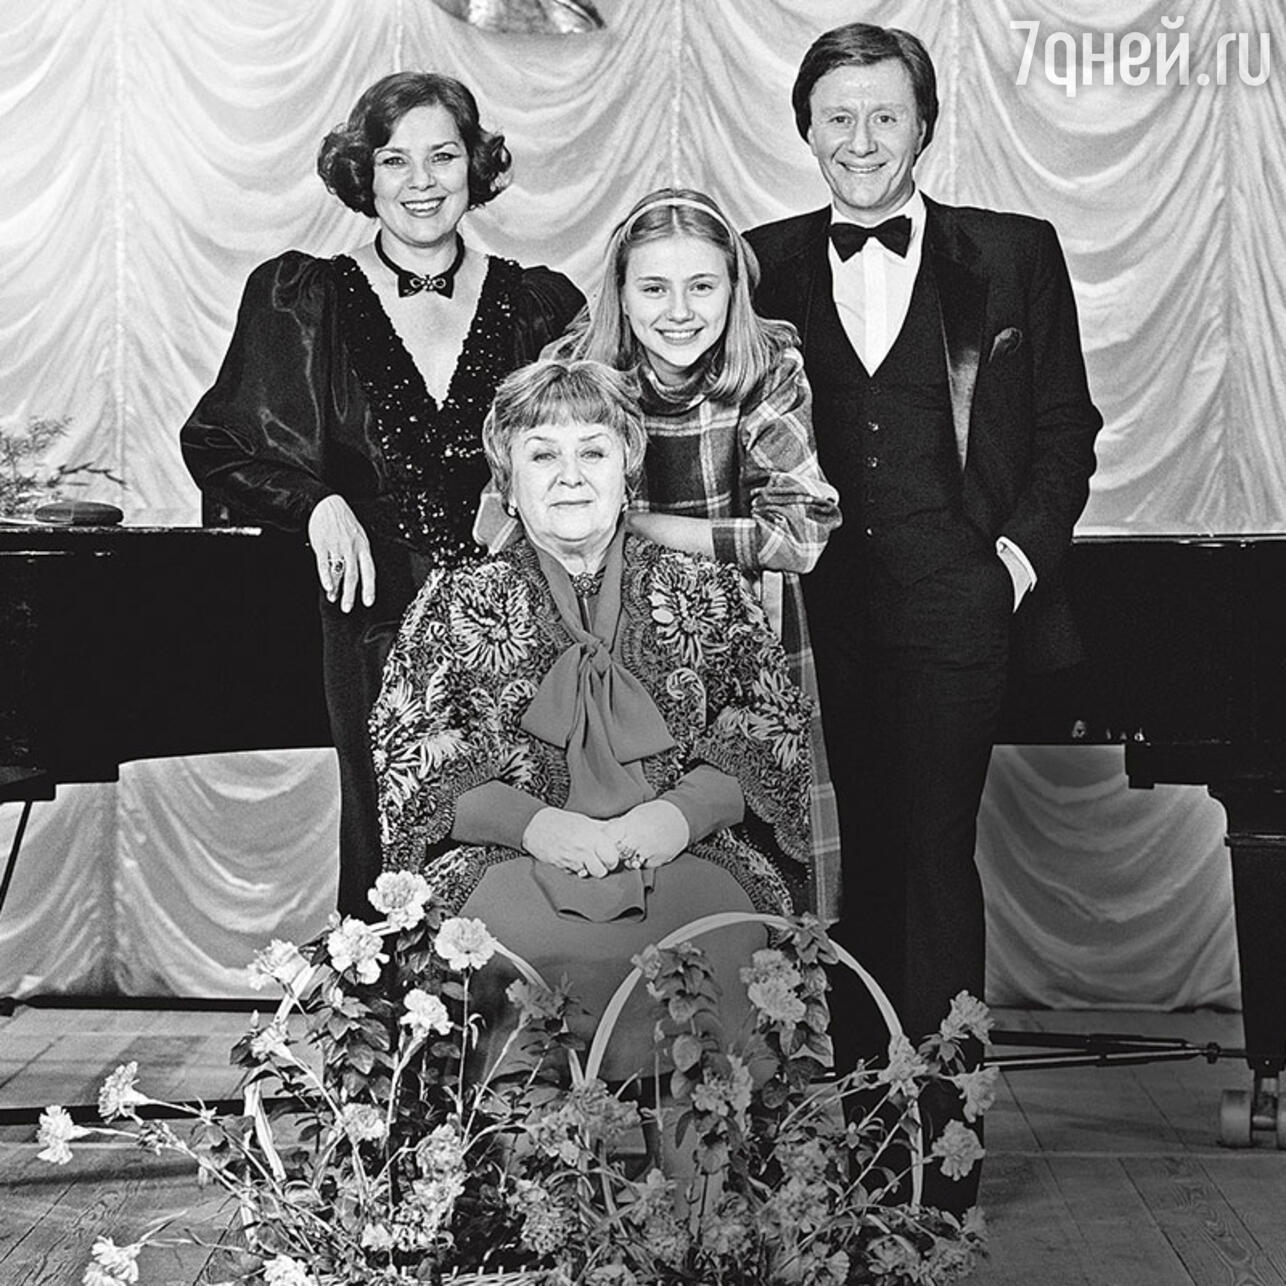 Мария Владимировна Миронова, Лариса Голубкина и Андрей Миронов с дочкой Машей